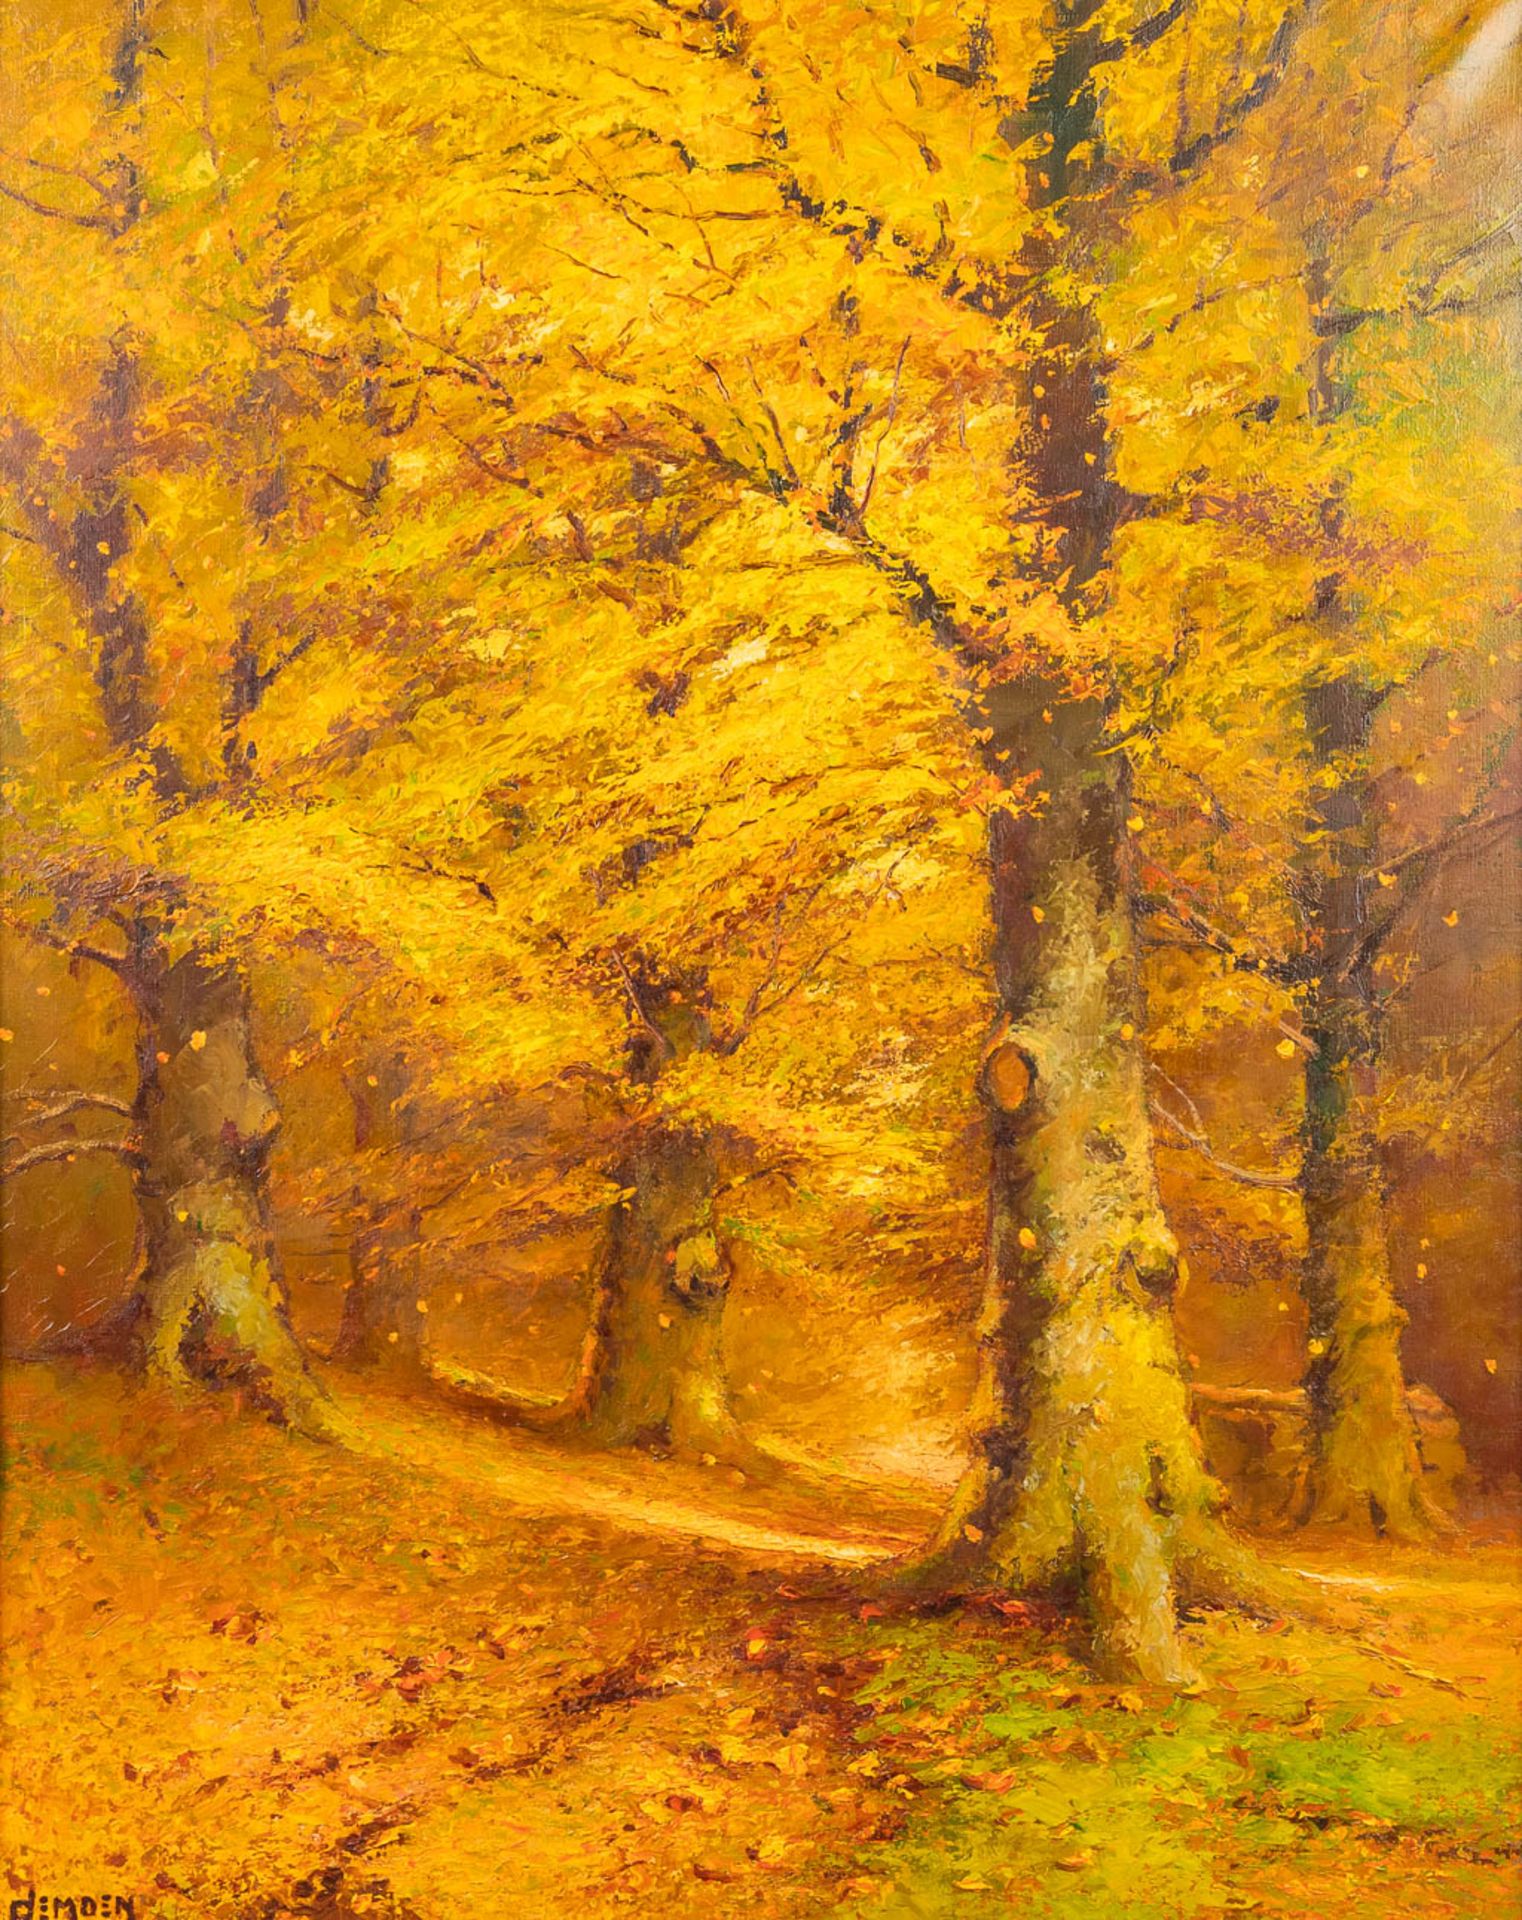 Albert DEMOEN (1916) 'Forest View' oil on canvas. (80 x 105cm)